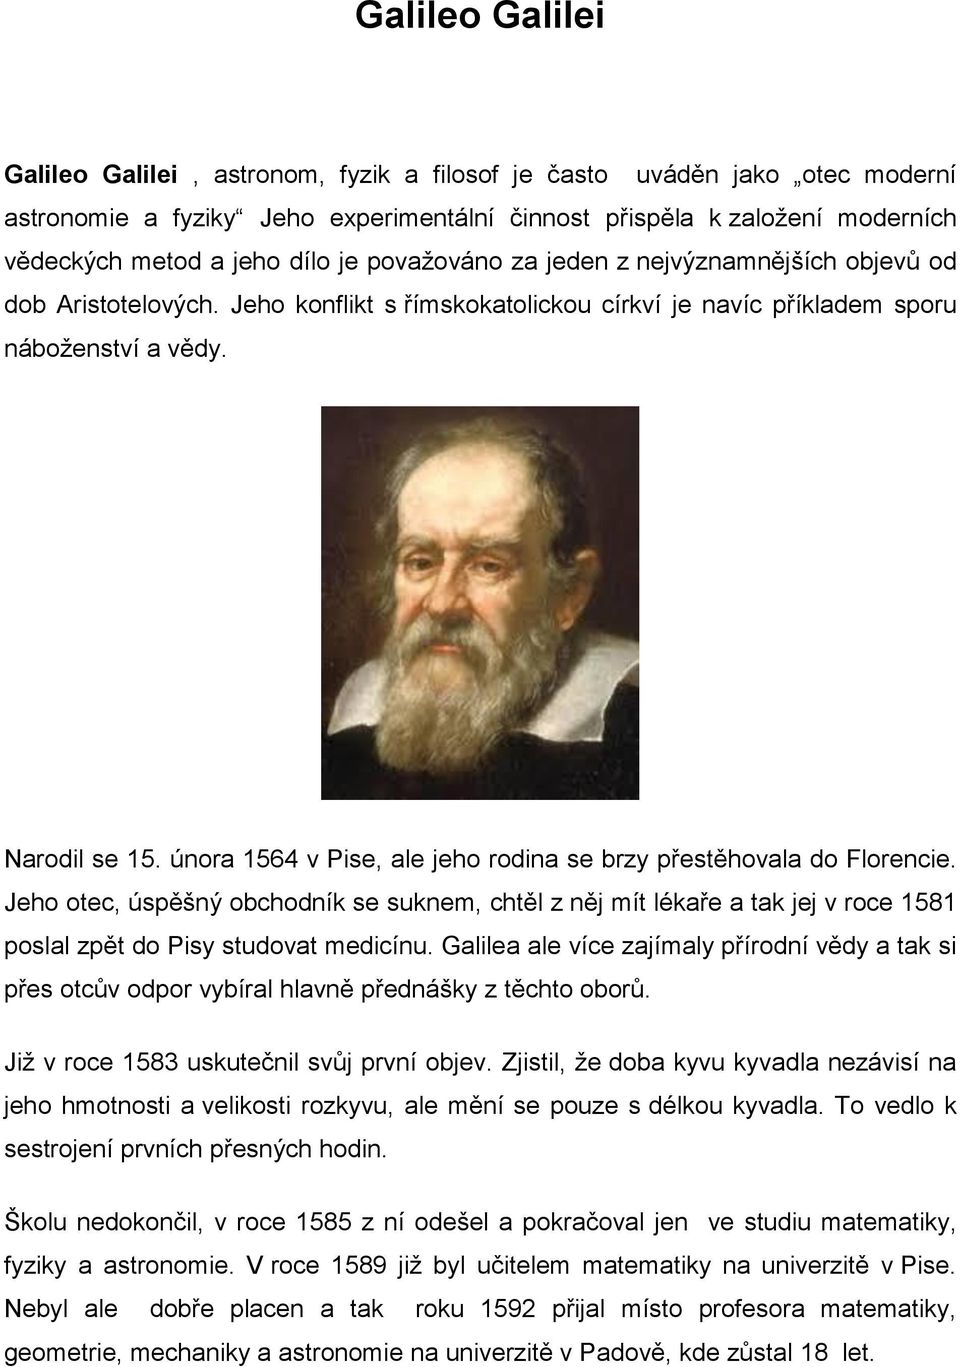 února 1564 v Pise, ale jeho rodina se brzy přestěhovala do Florencie. Jeho otec, úspěšný obchodník se suknem, chtěl z něj mít lékaře a tak jej v roce 1581 poslal zpět do Pisy studovat medicínu.